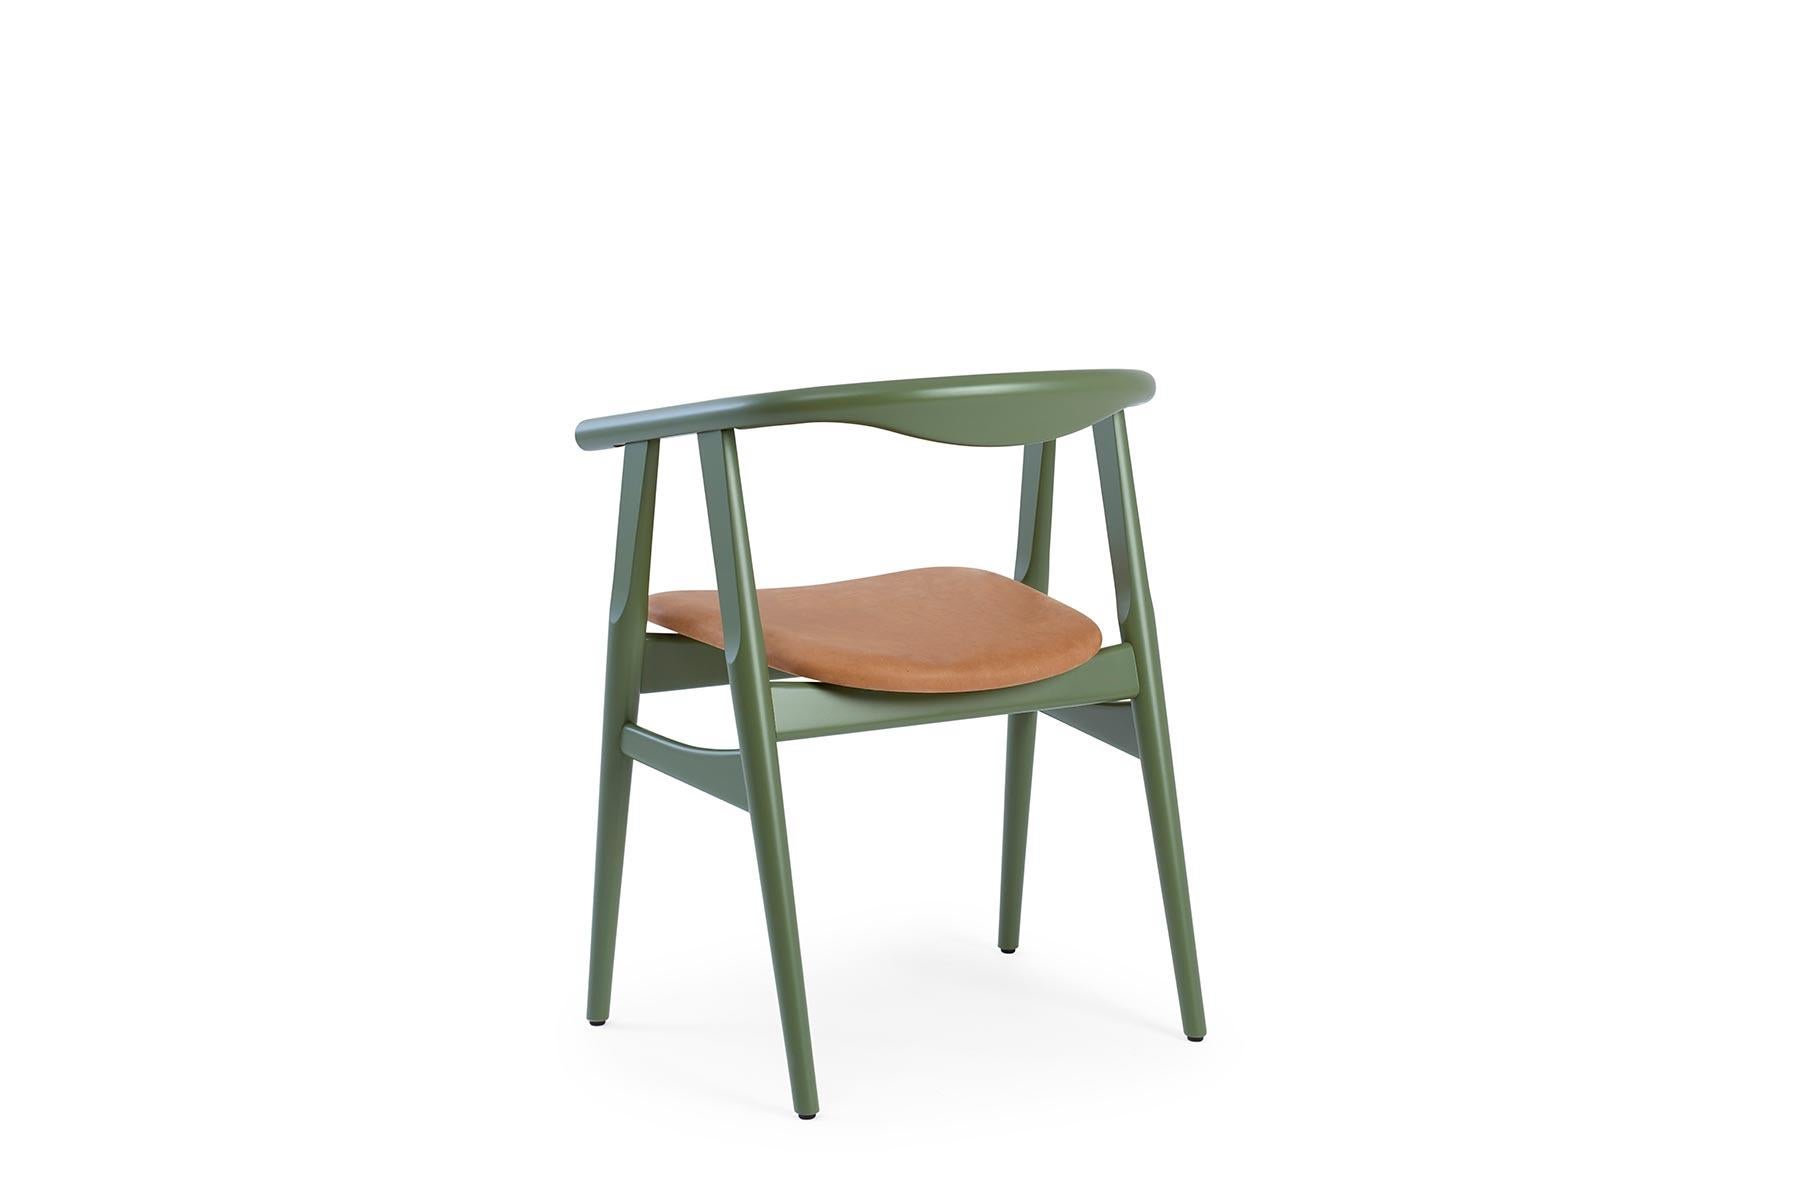 Der 1970 von Hans Wegner entworfene GE 525 Esszimmerstuhl bietet ein wunderschön abgerundetes, aus Holz geformtes Design. Der Stuhl wird in der GETAMA-Fabrik im dänischen Gedsted von erfahrenen Tischlern nach traditionellen skandinavischen Techniken